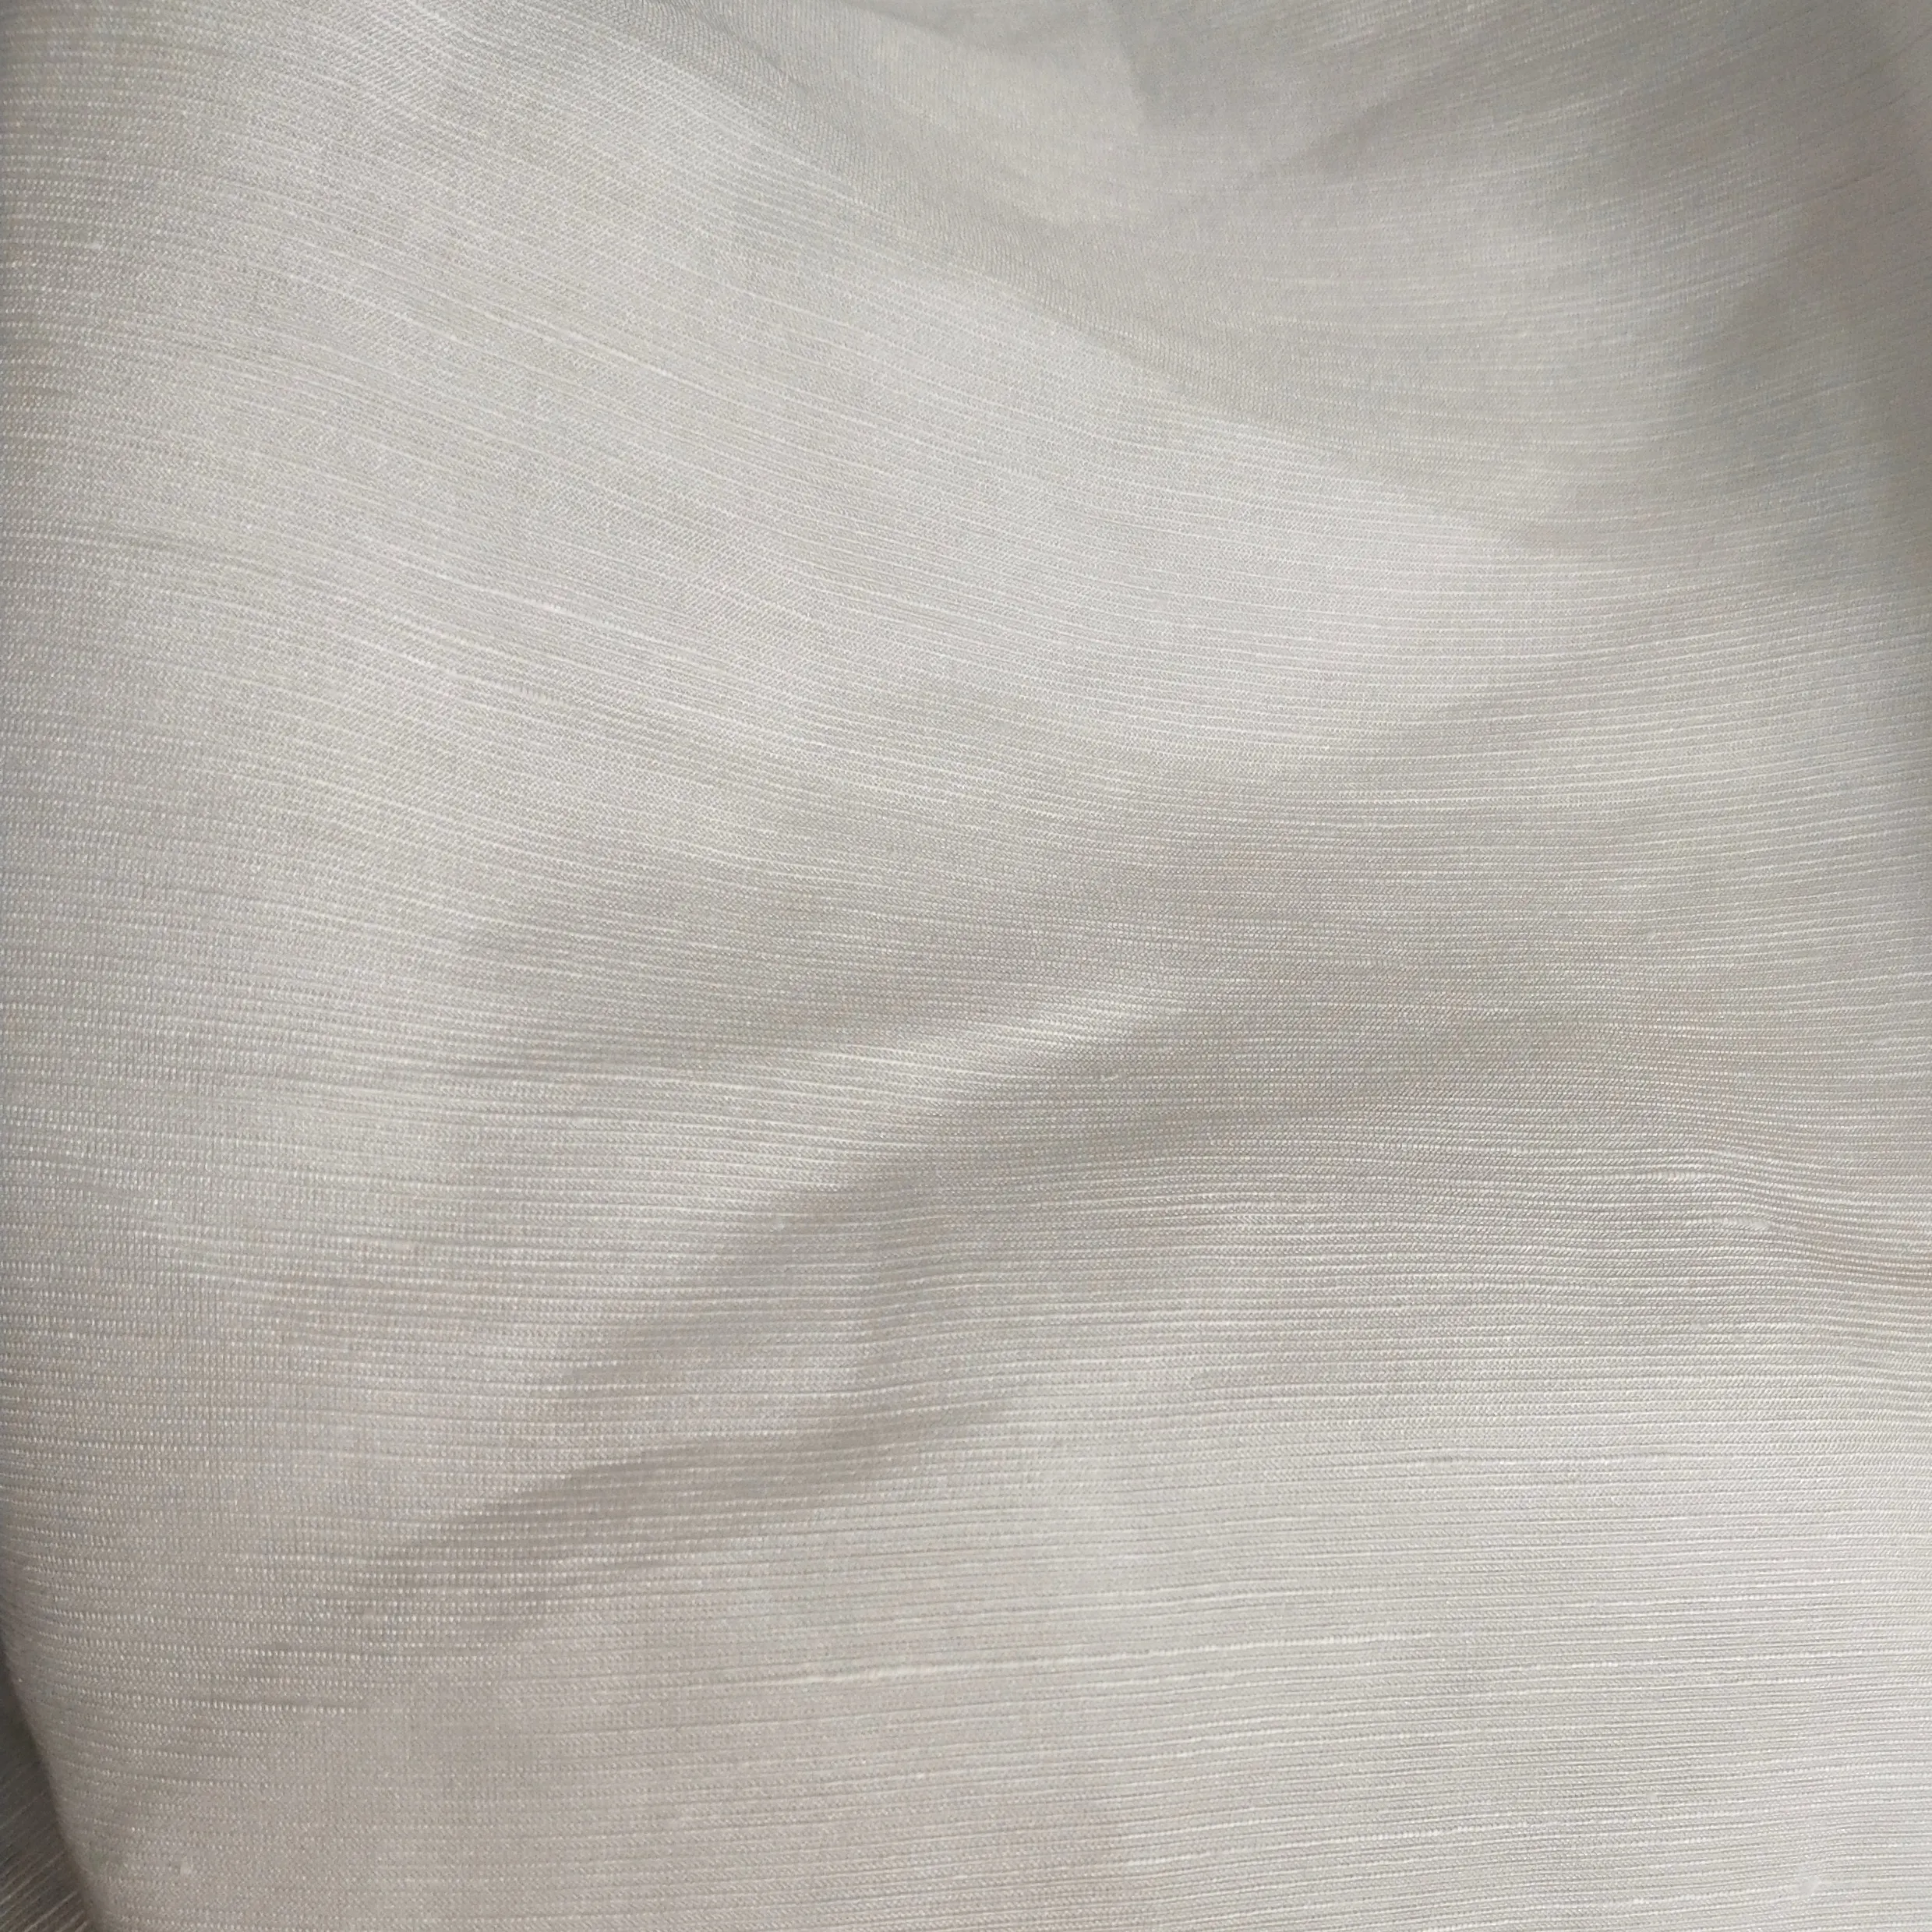 الصين الحرير الكتان نسيج الشيفون الأبيض اللون للطباعة والصباغة